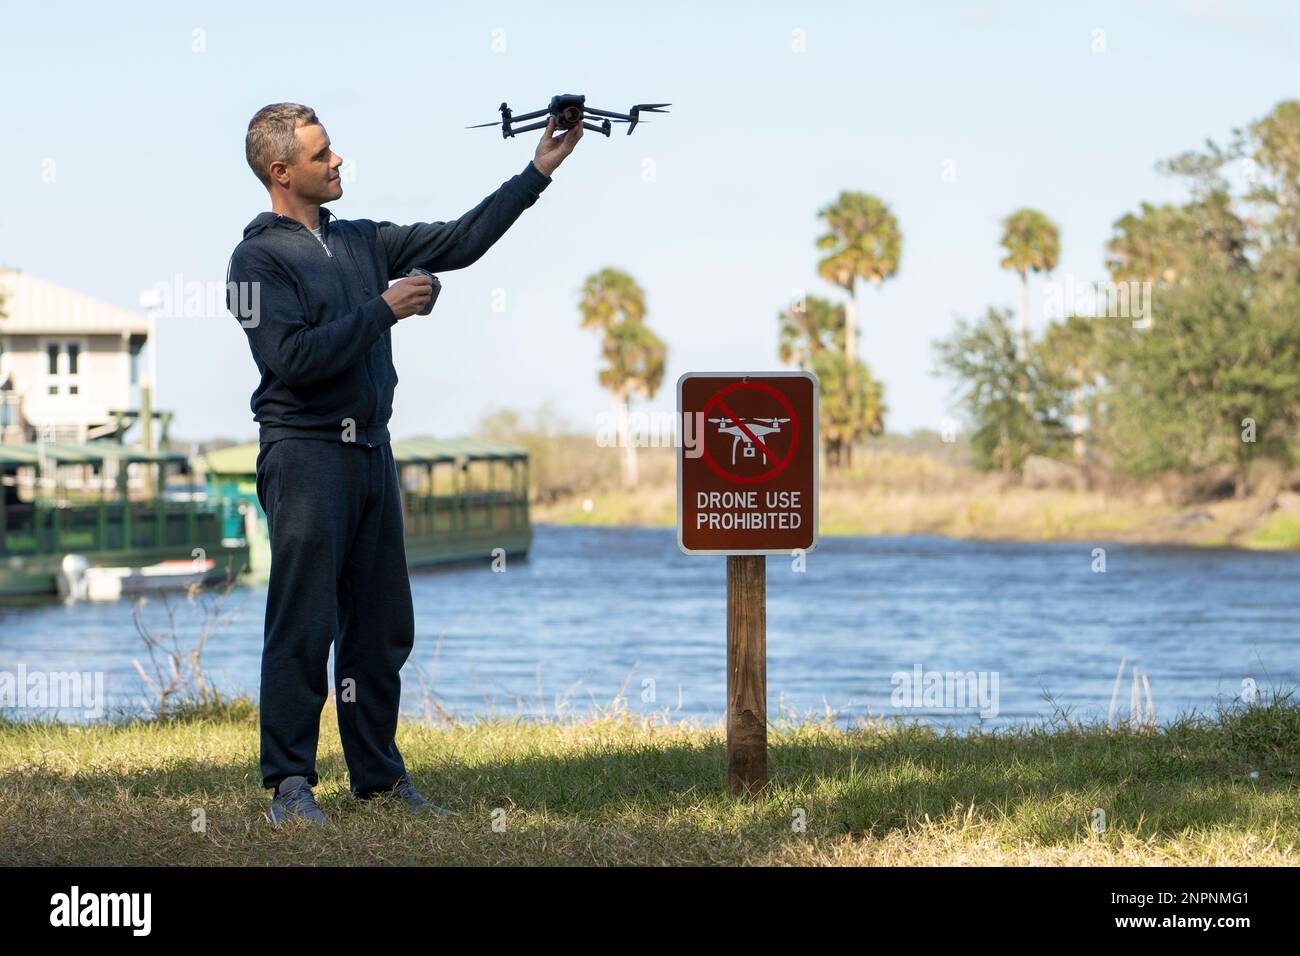 Der Mann wird seinen Quadcopter in kein Drohnengebiet fliegen. Betreiber, der sein UAS rechtswidrig im State Park in der Nähe des Schilds für Beschränkungen verwendet. Stockfoto